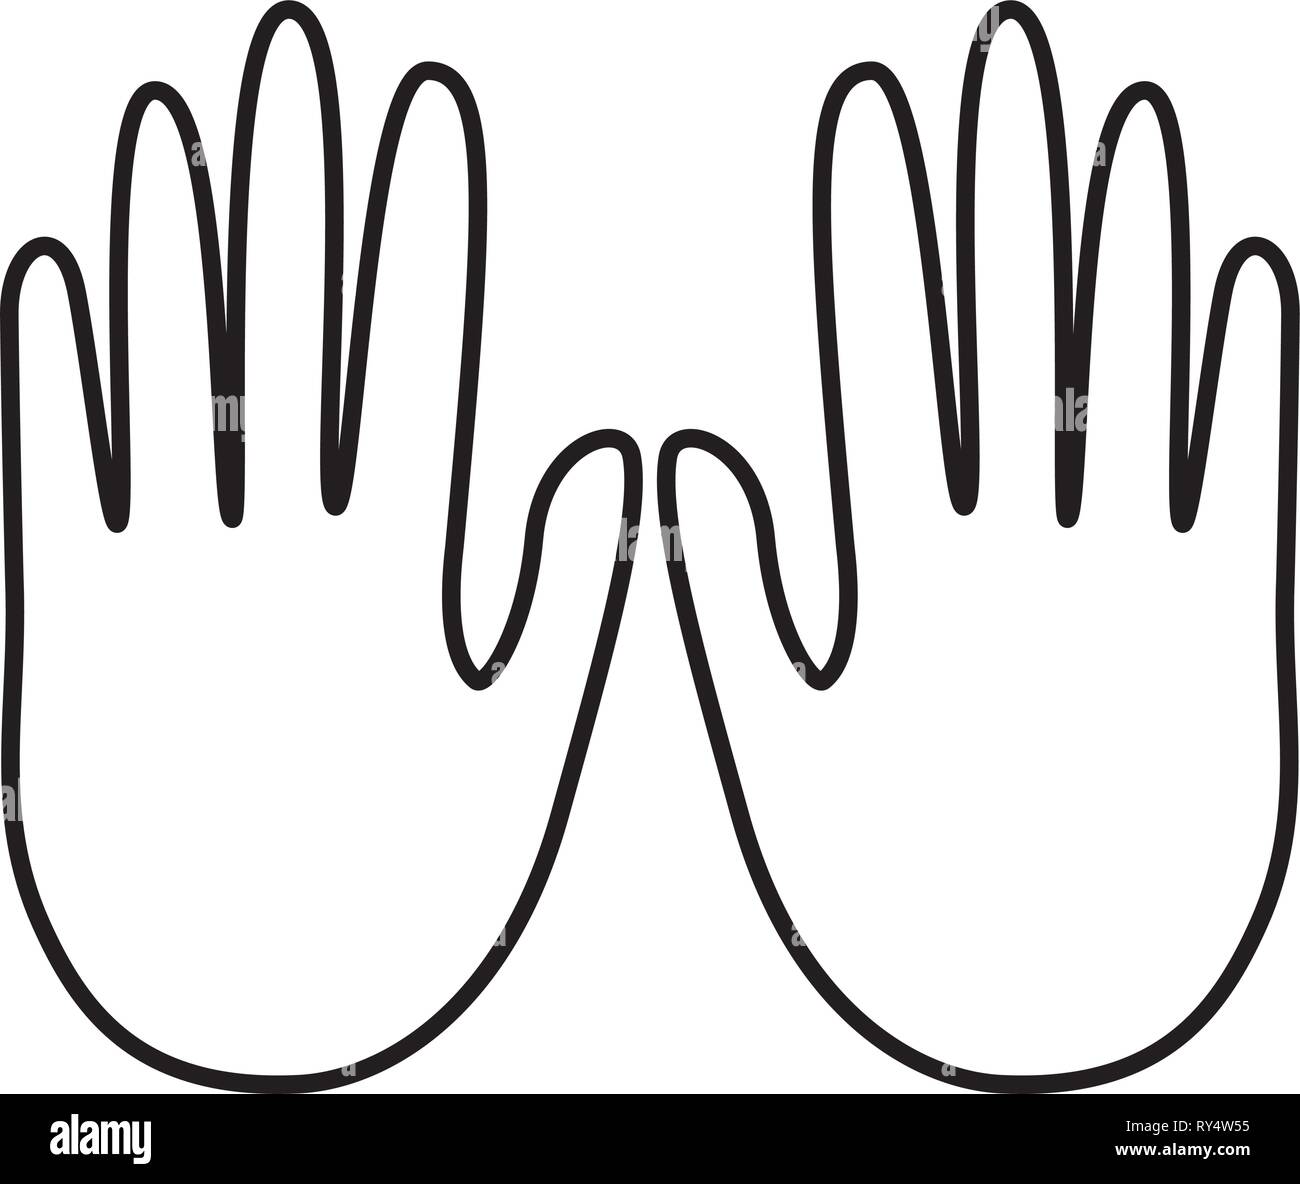 Mano Humana Mostrando Cinco Dedos Abiertos Ilustración Vectorial Diseño De  Etiqueta Ilustraciones svg, vectoriales, clip art vectorizado libre de  derechos. Image 95503875